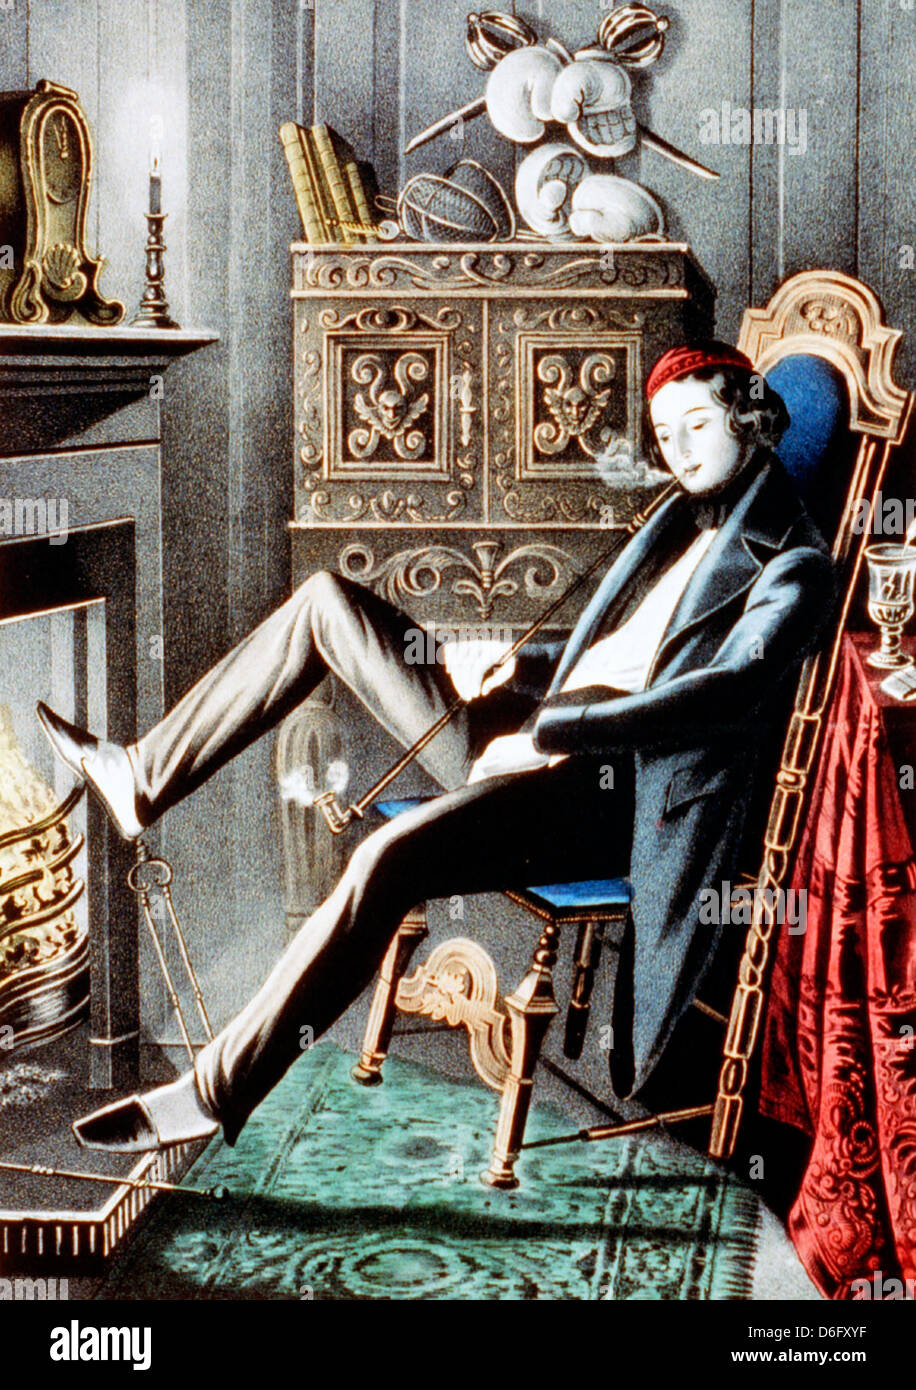 Farbige Lithographie Hand zeigt einen einzigen Mann raucht eine Pfeife Stockfoto